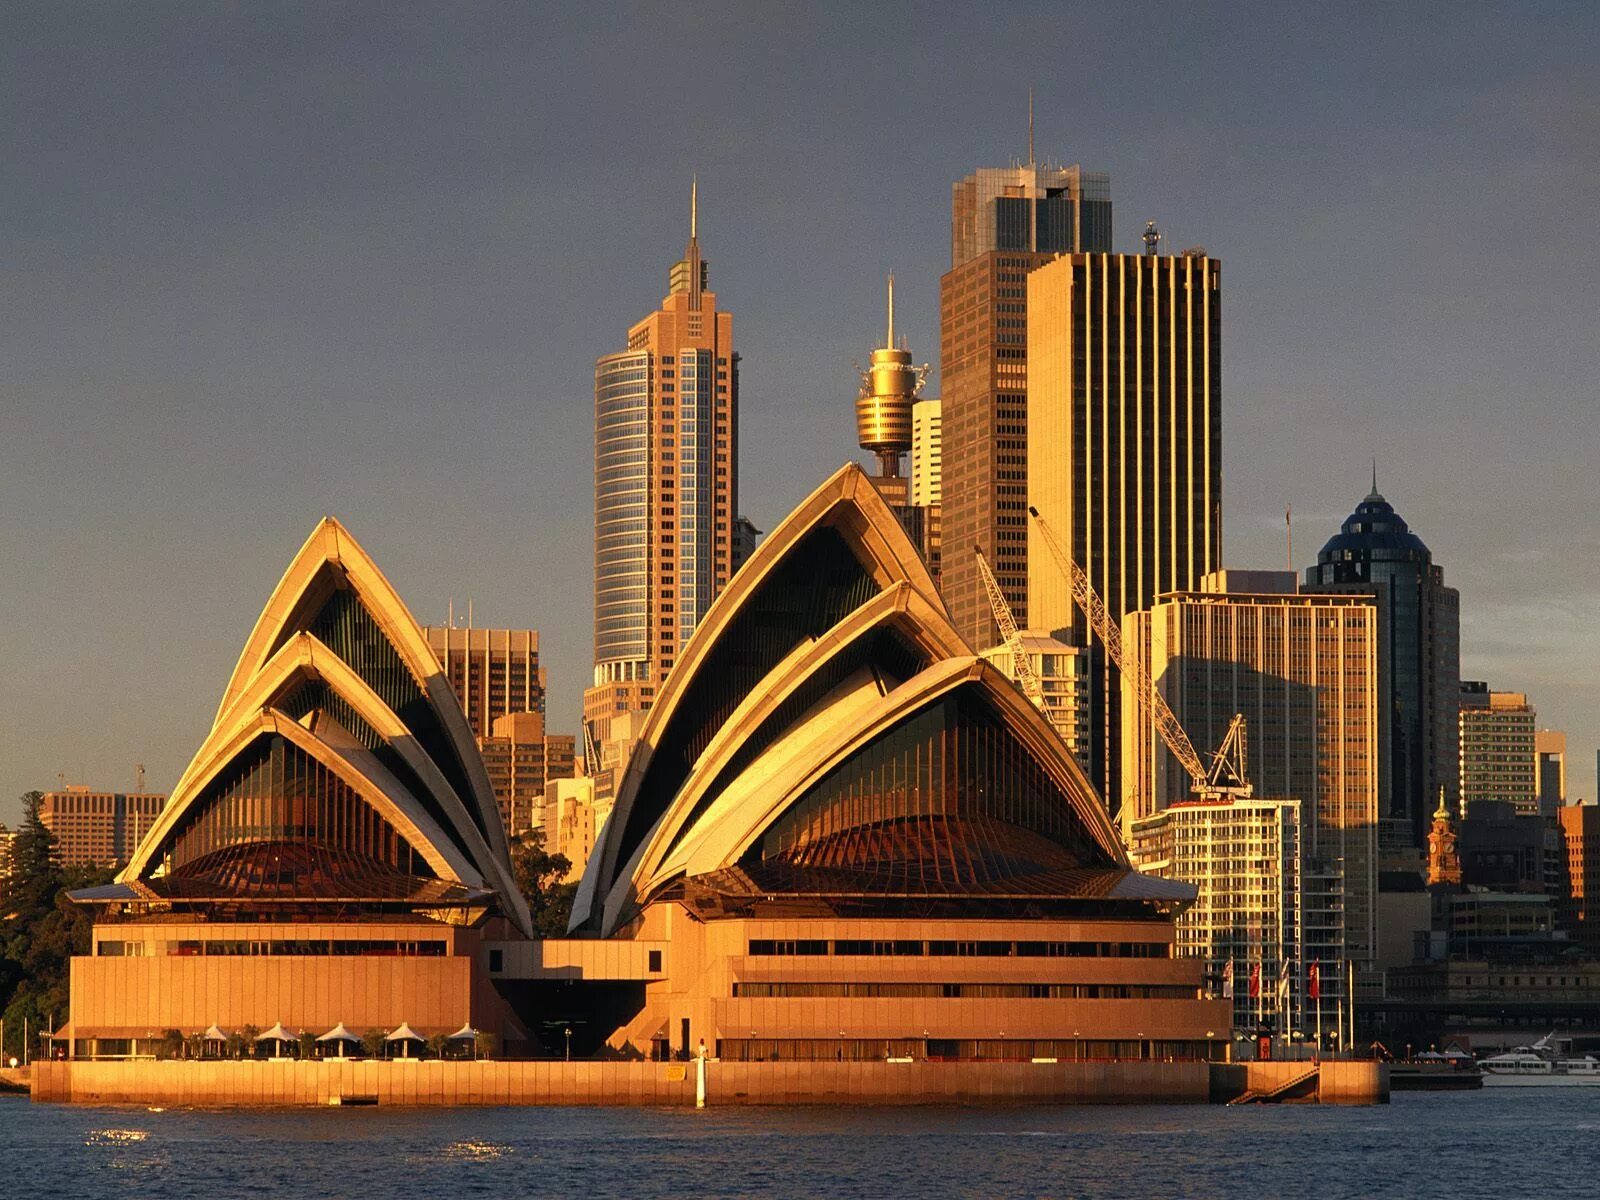 Какая красивая страна. Сиднейский оперный театр. Сидней столица Австралии достопримечательности. Australia Sydney архитектура города. Архитектура Сидней Мельбурн.